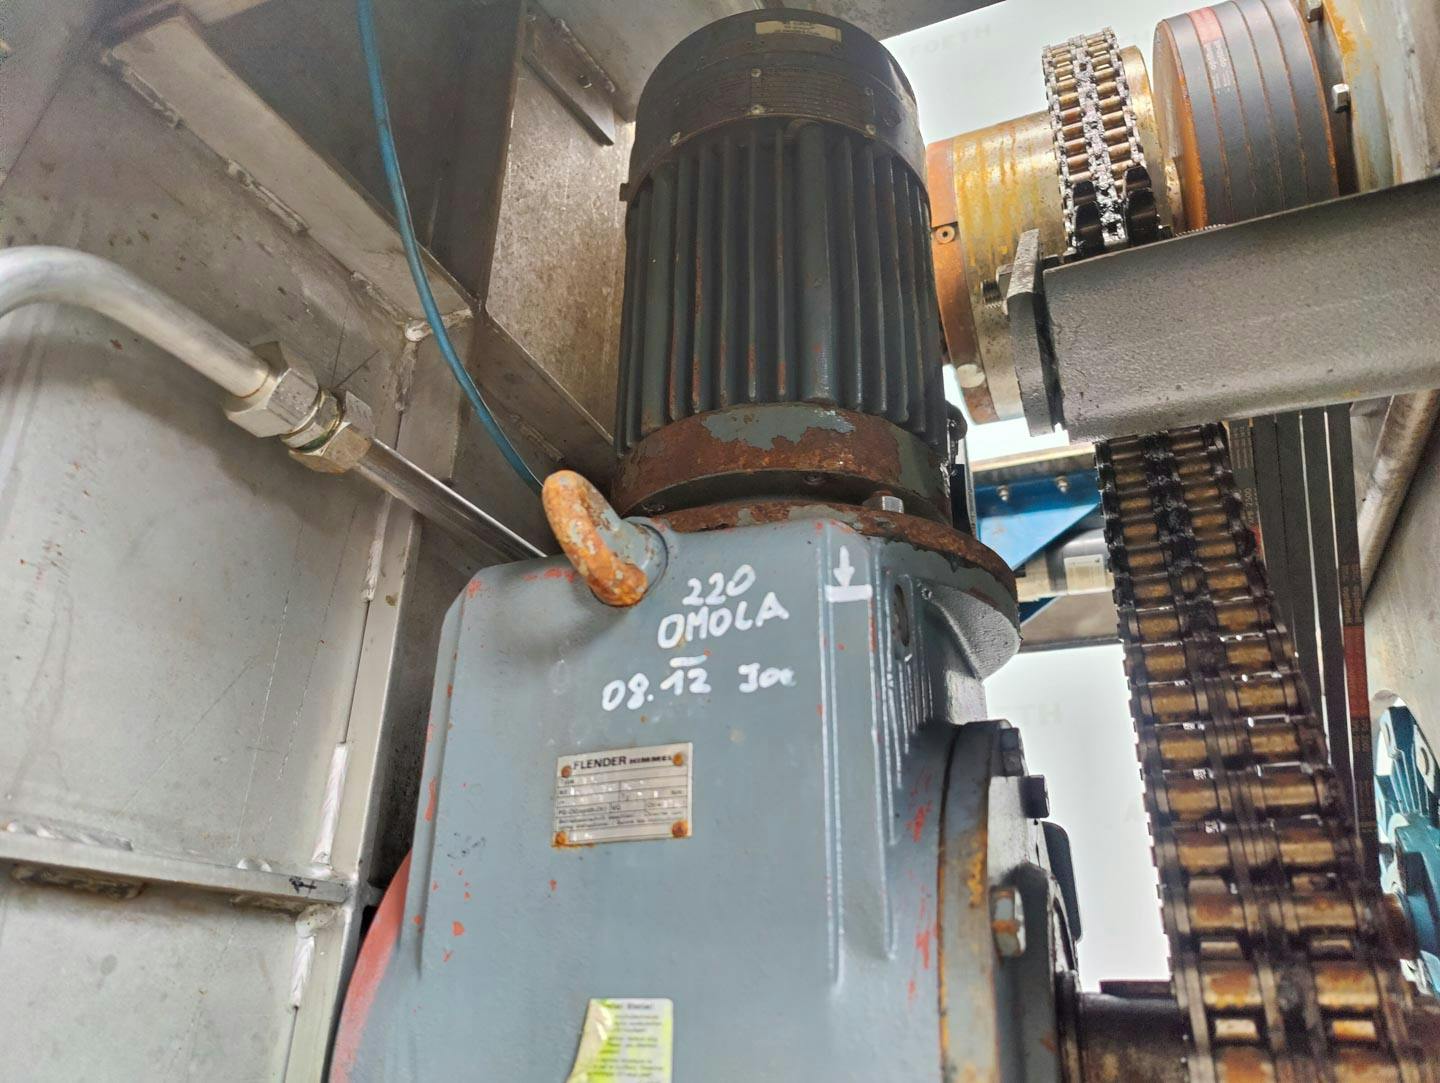 Fima Process Trockner TZT-1300 - centrifuge dryer - Wirówka koszowa - image 14